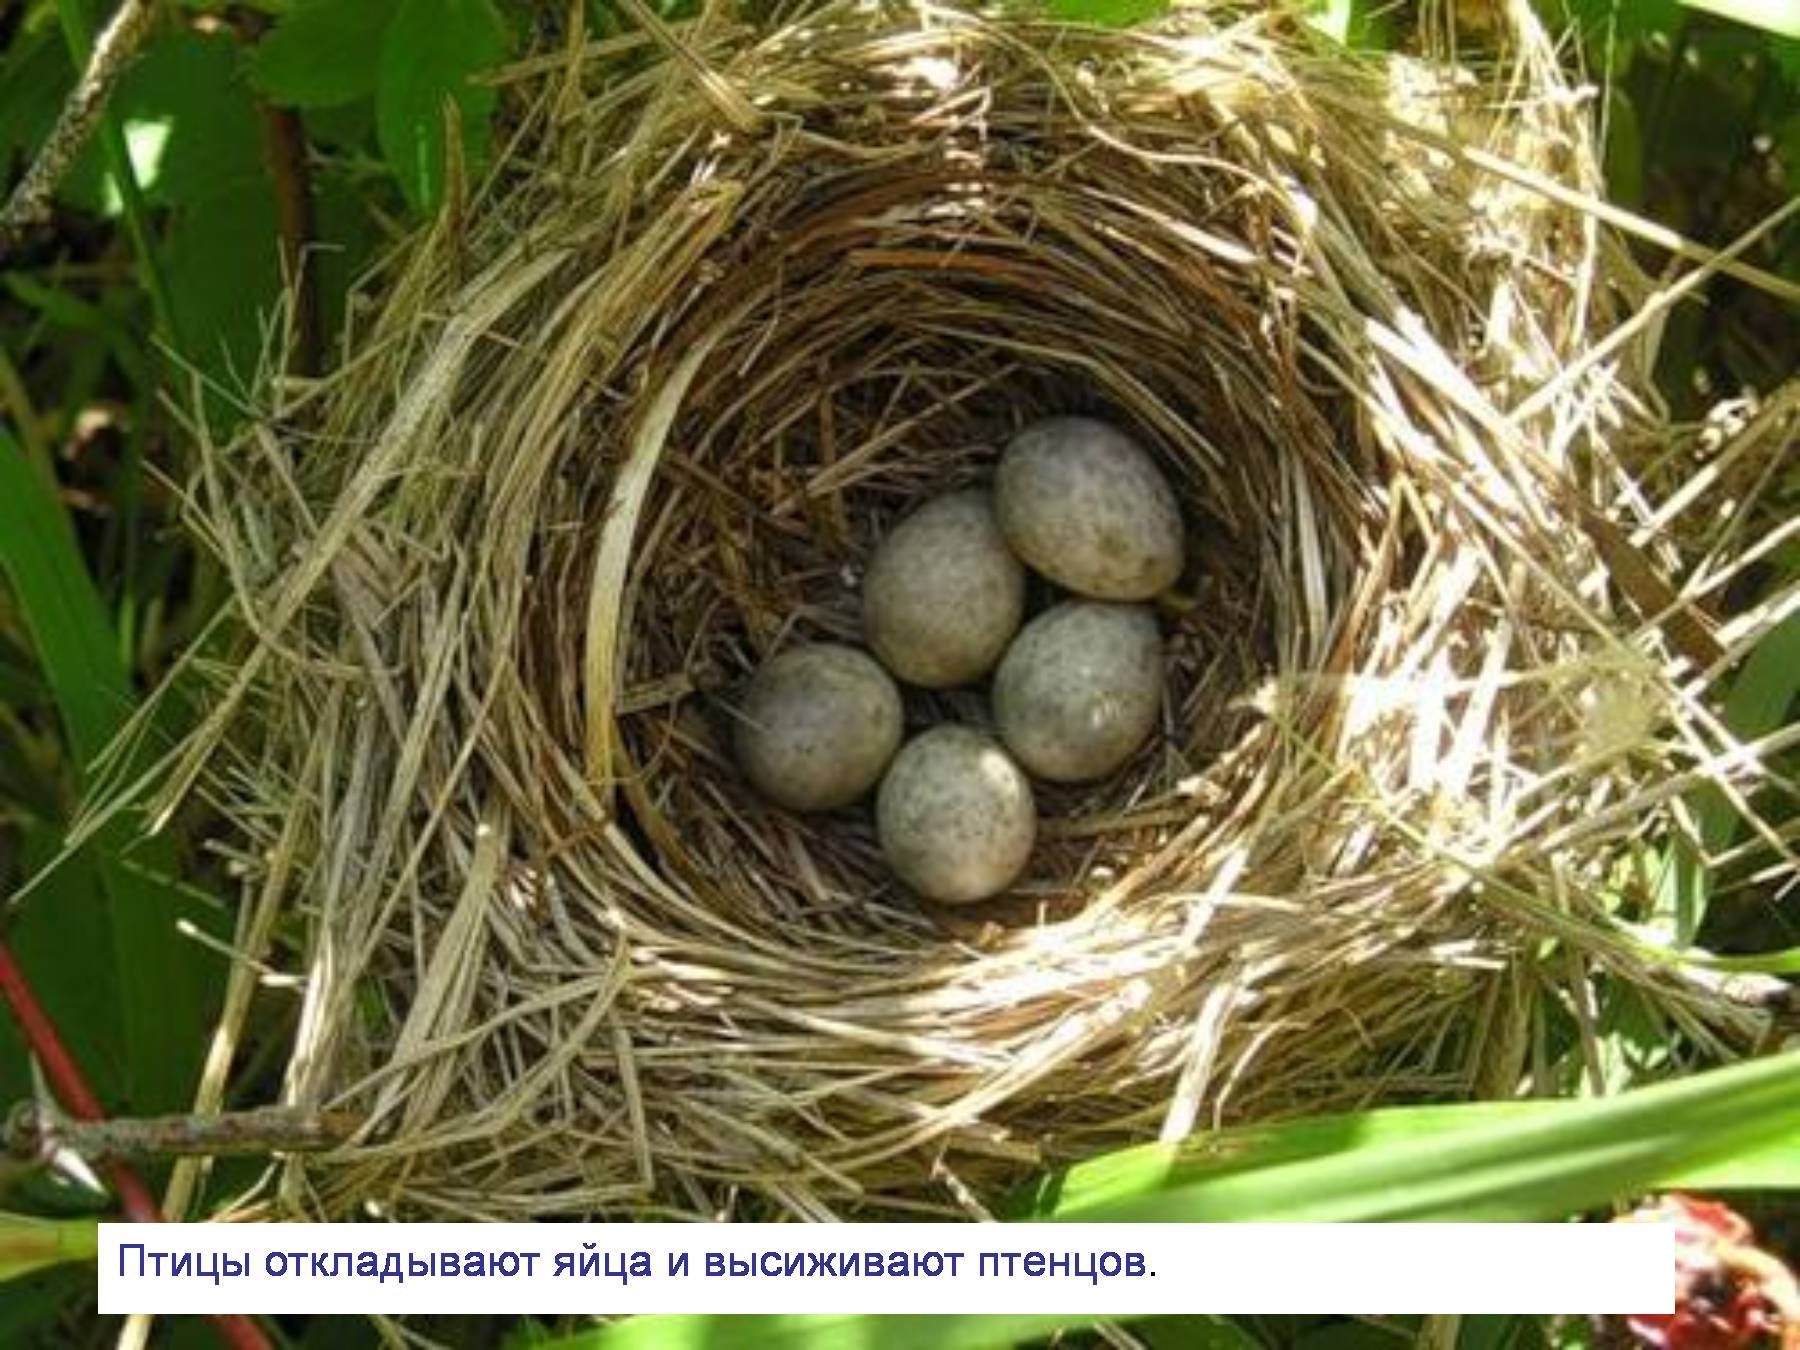 Песня птички яички. Птицы высиживают птенцов. Гнезда лесных птиц. Яйца птиц. Птичьи яйца в гнезде.